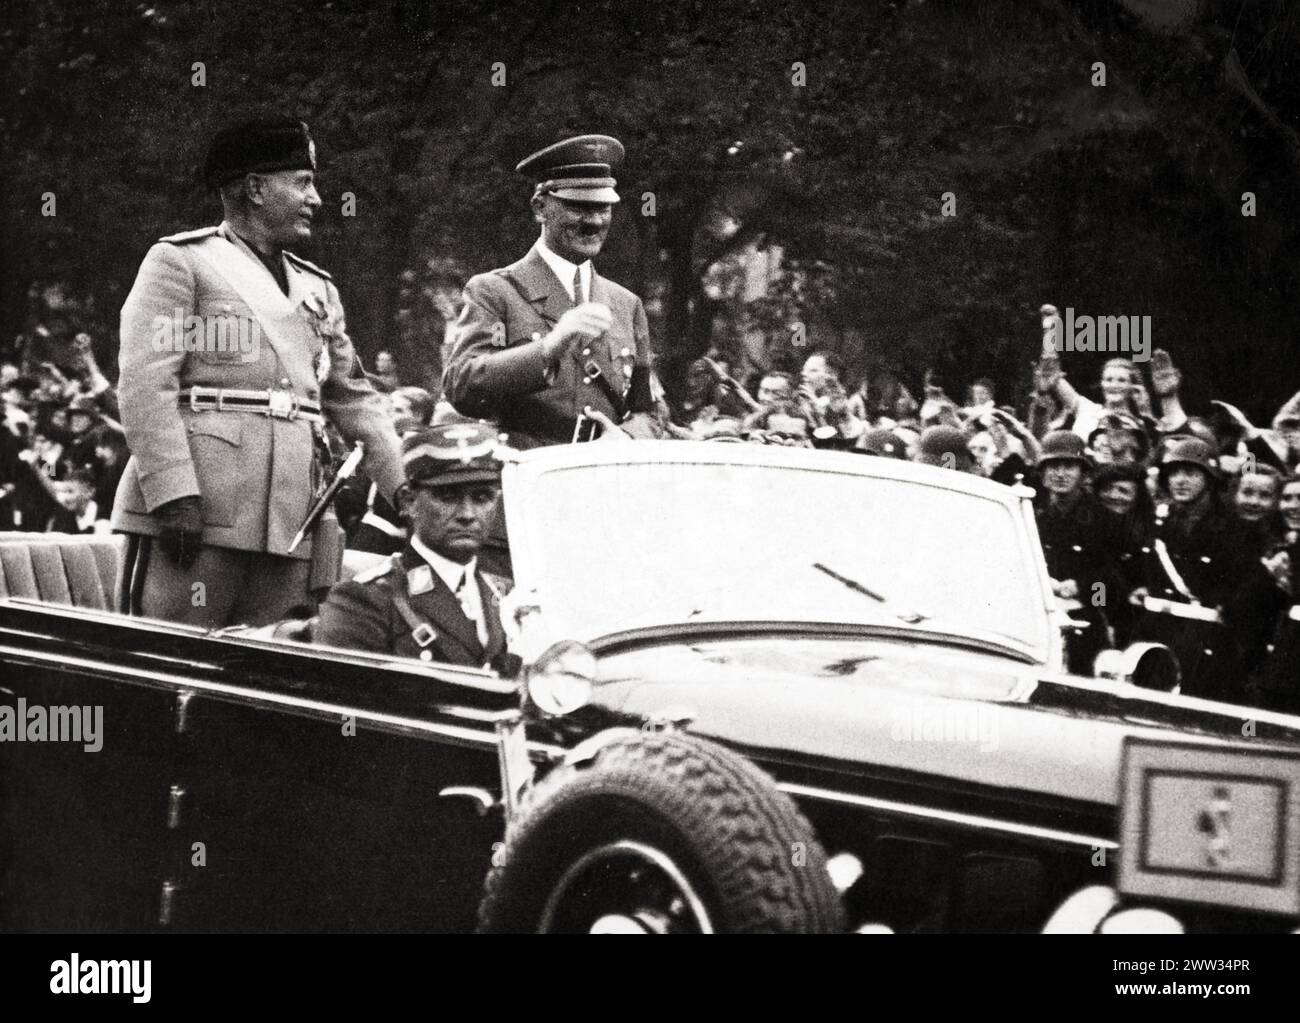 Benito Mussolini et Adolf Hitler dans une voiture soutenue par une grande foule - c 1940 Banque D'Images